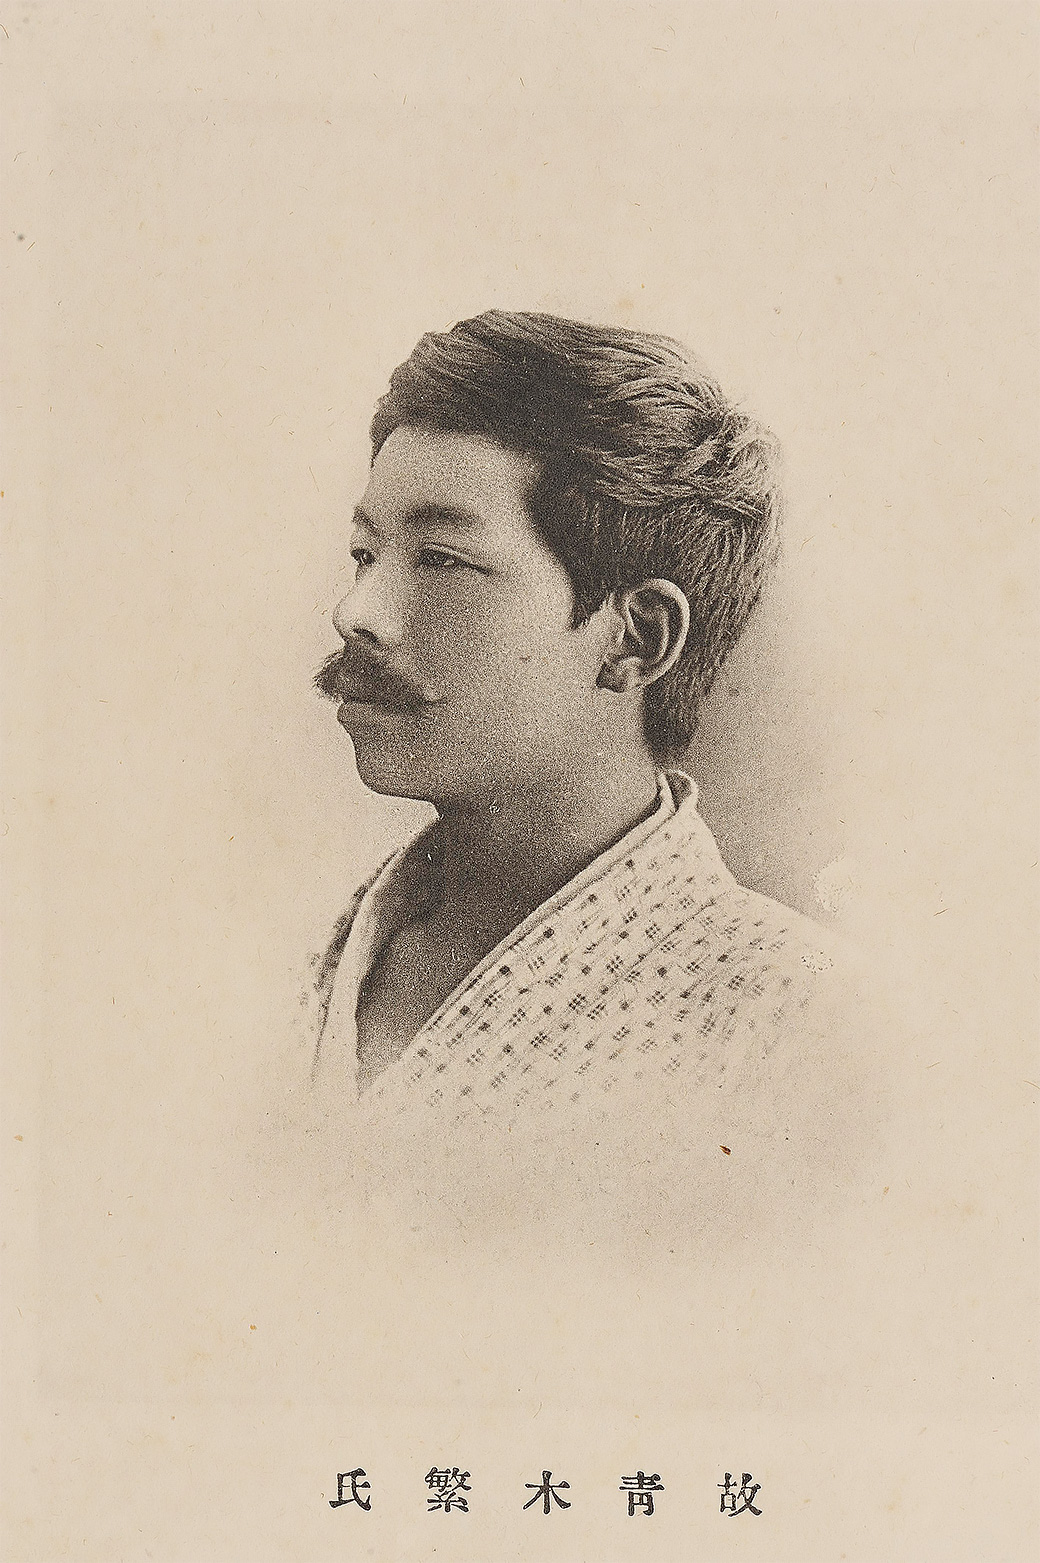 Shigeru Aoki’s portrait